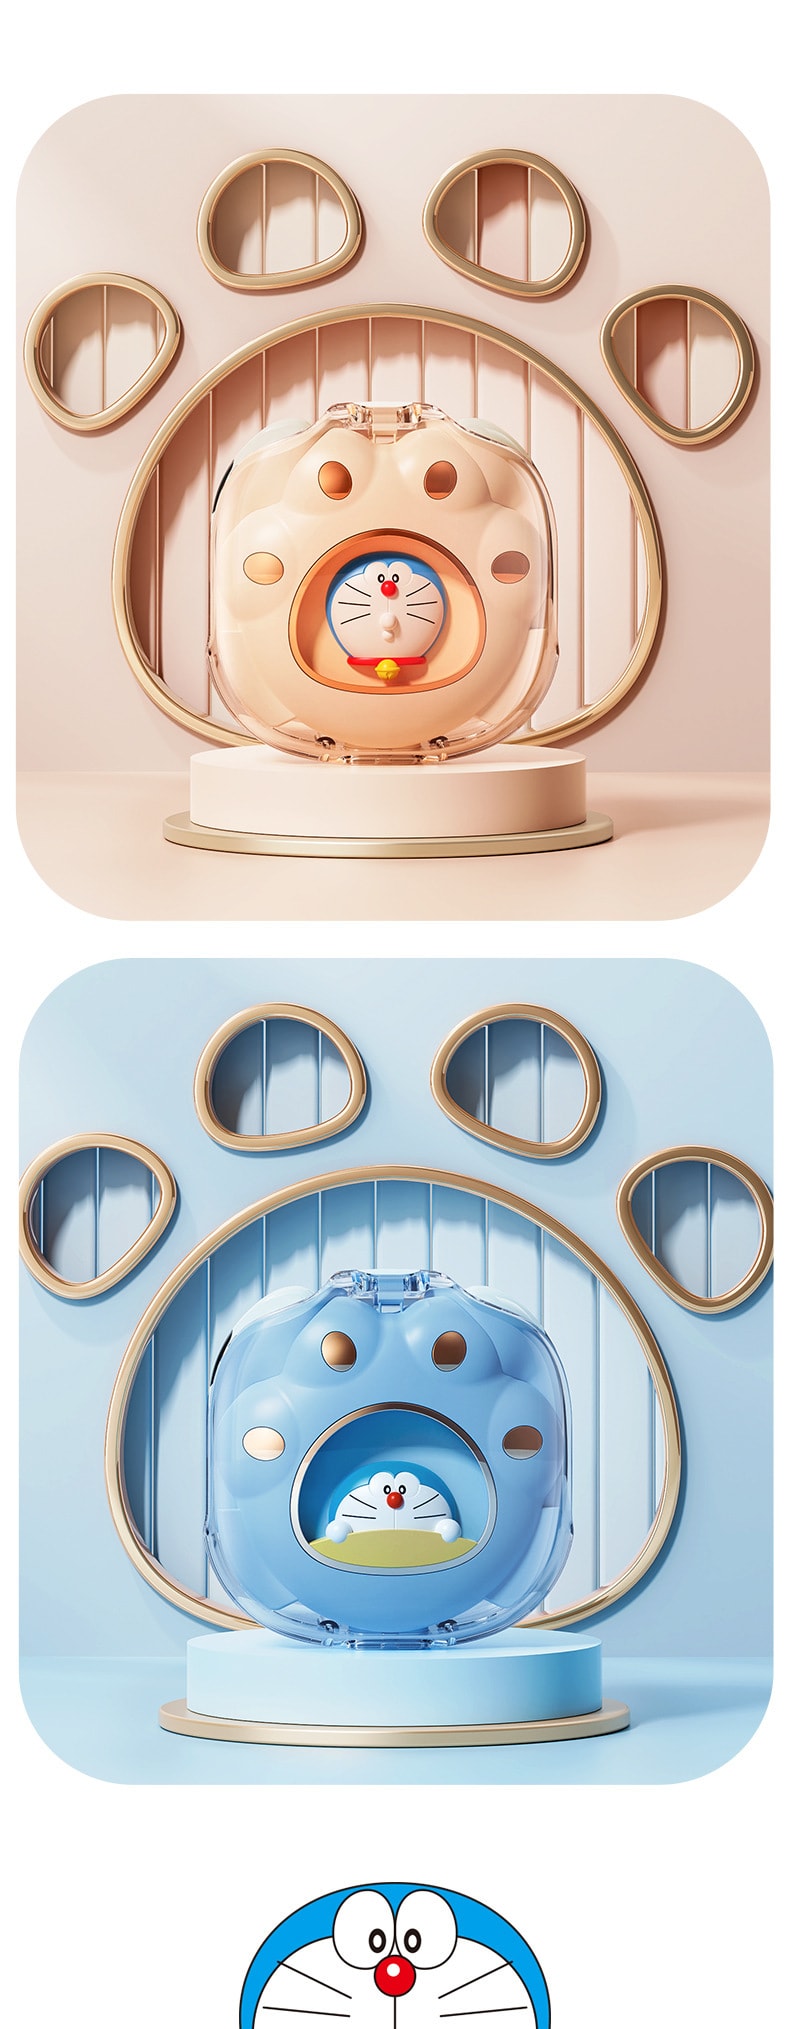 【中国直邮】哆啦A梦  猫爪耳机氛围灯创意TWS耳机  米色